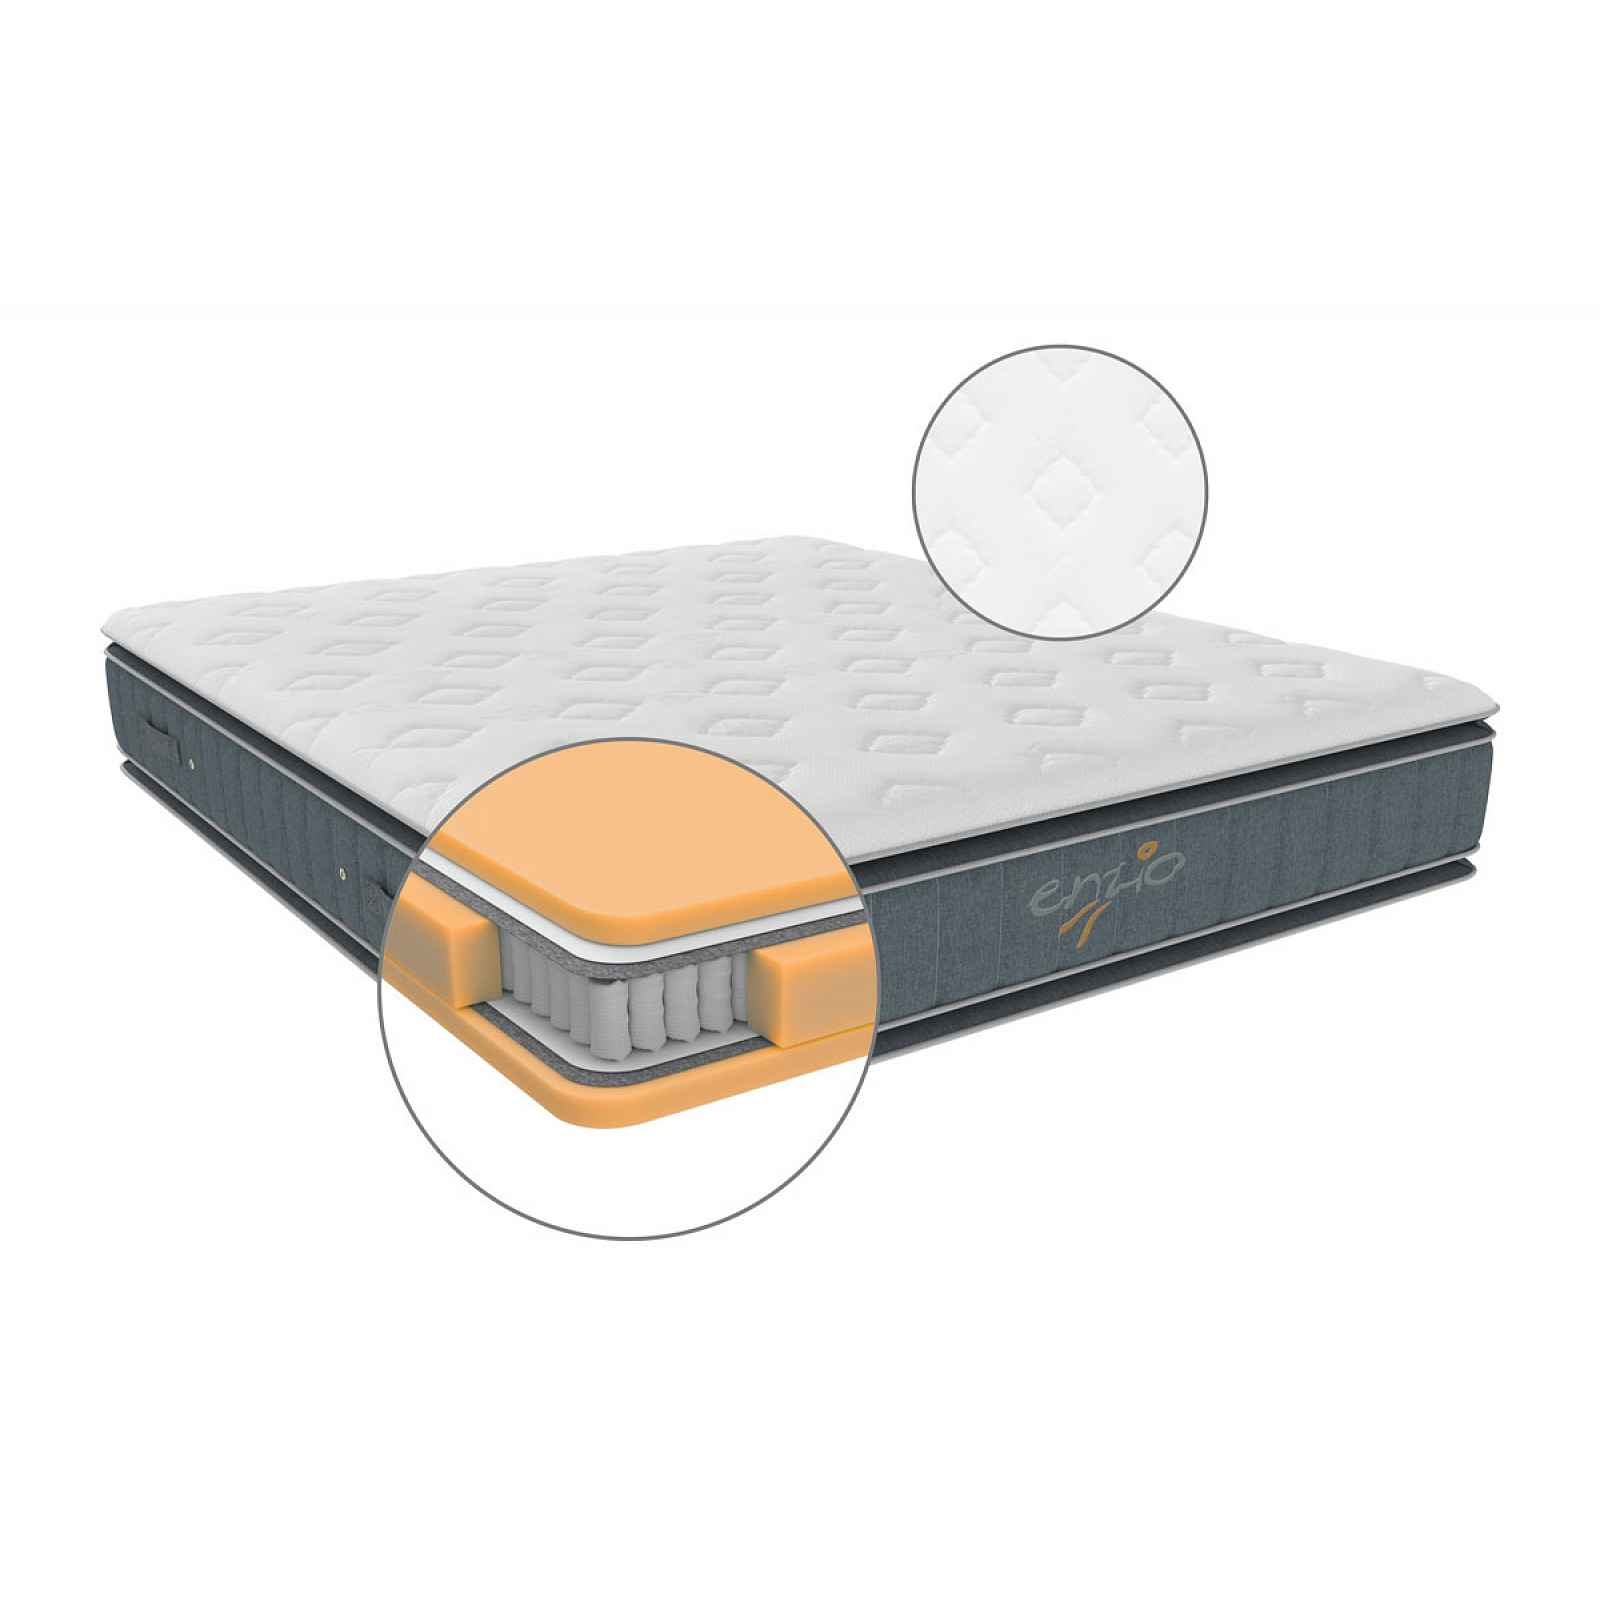 Matrace ATLANTA 2.0 vhodná pro boxspringové postele s dvěma pocity tuhosti 180x200 cm